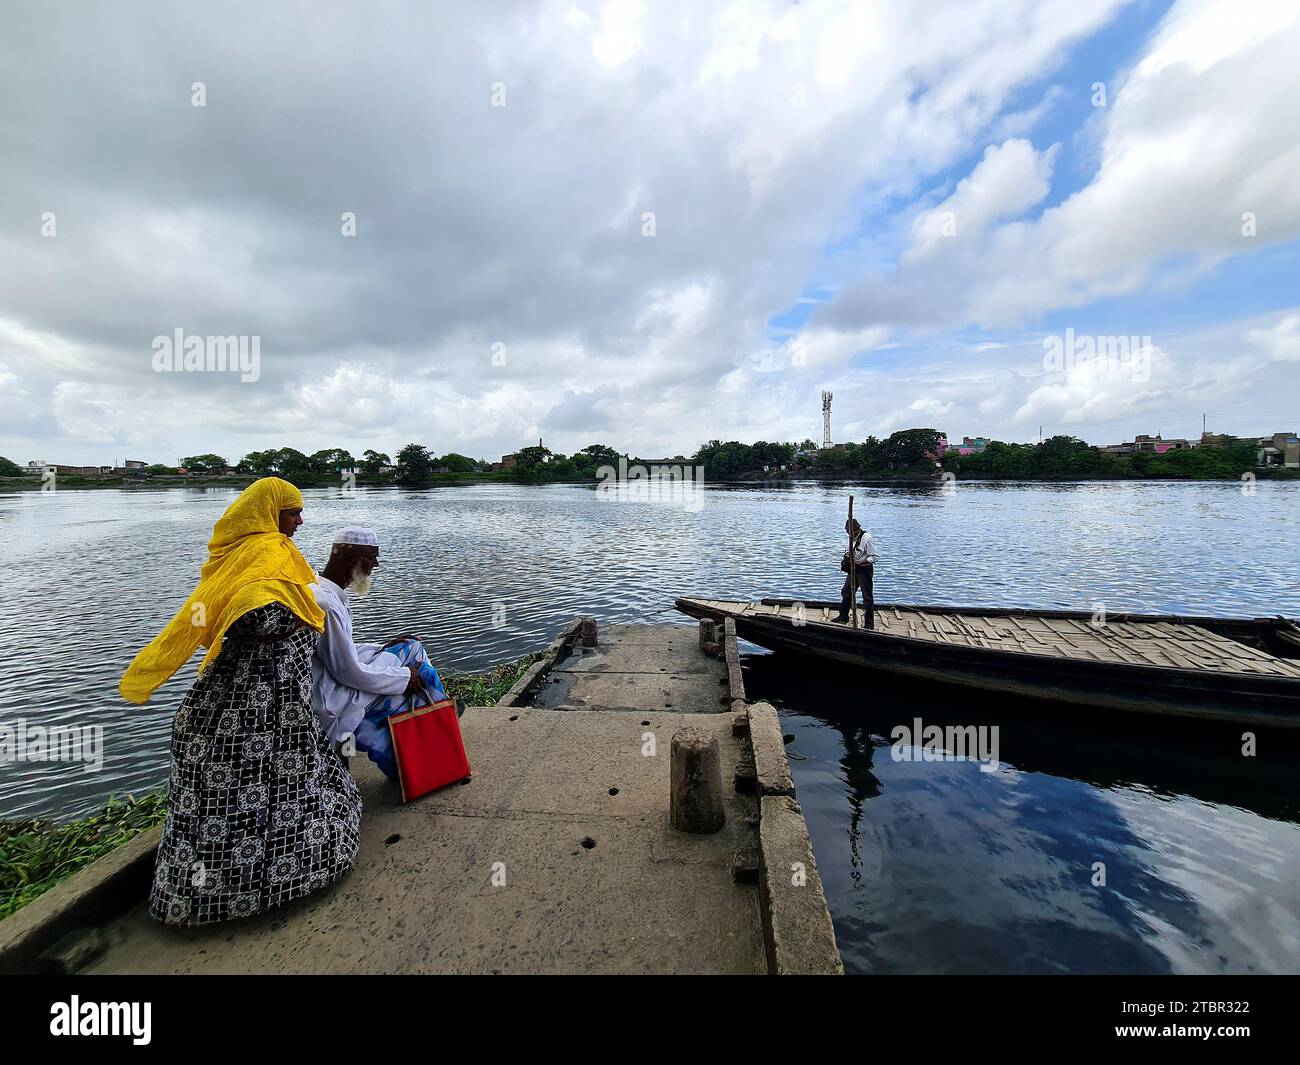 Gli abitanti dei villaggi rurali dell'India aspettano un'imbarcazione da trasporto locale nella zona lungo il fiume. Foto Stock